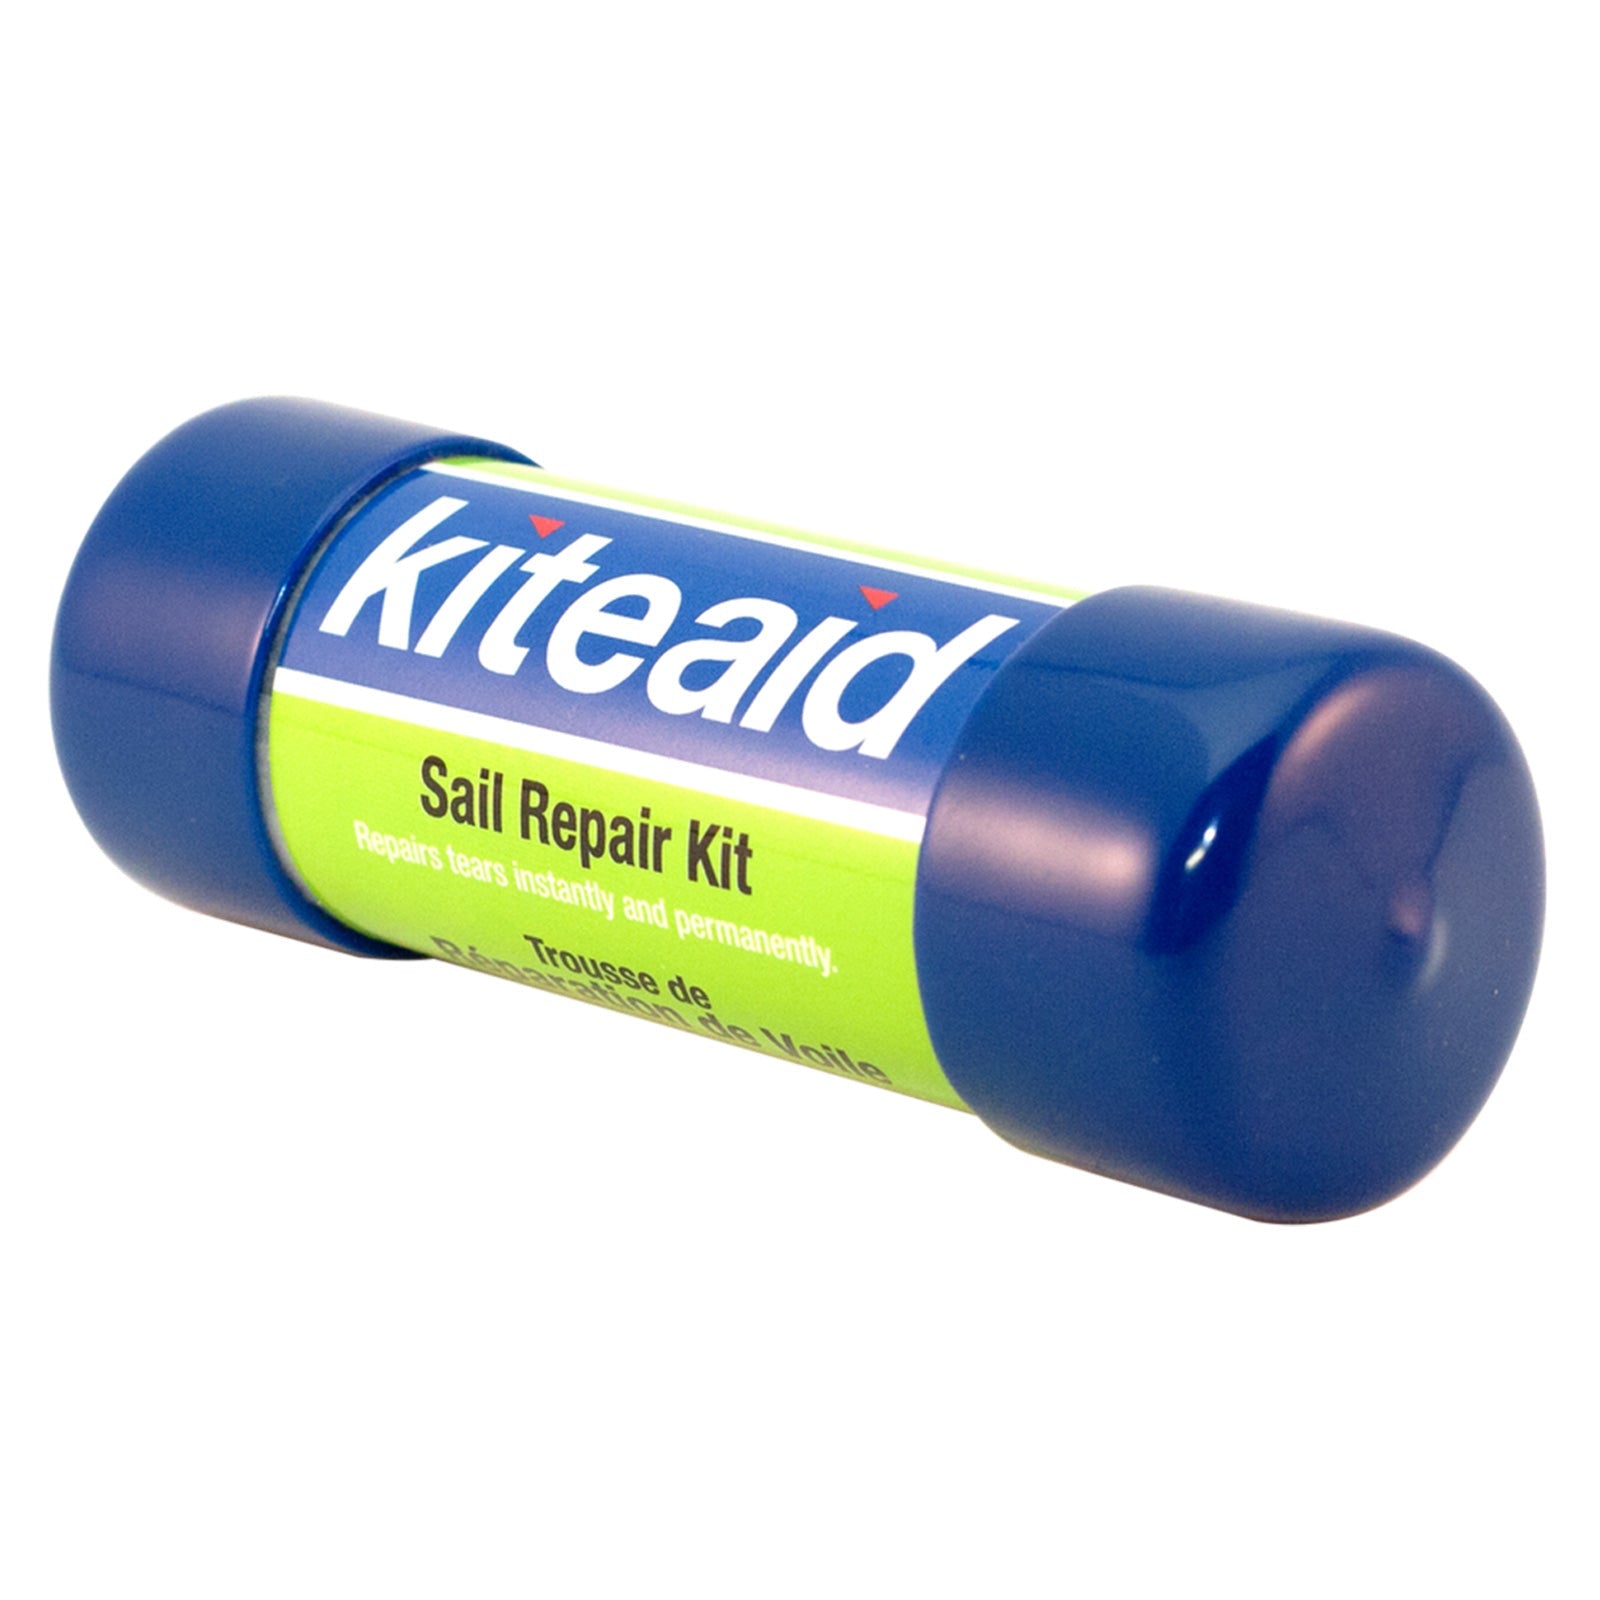 Kiteaid Sail Repair Kit